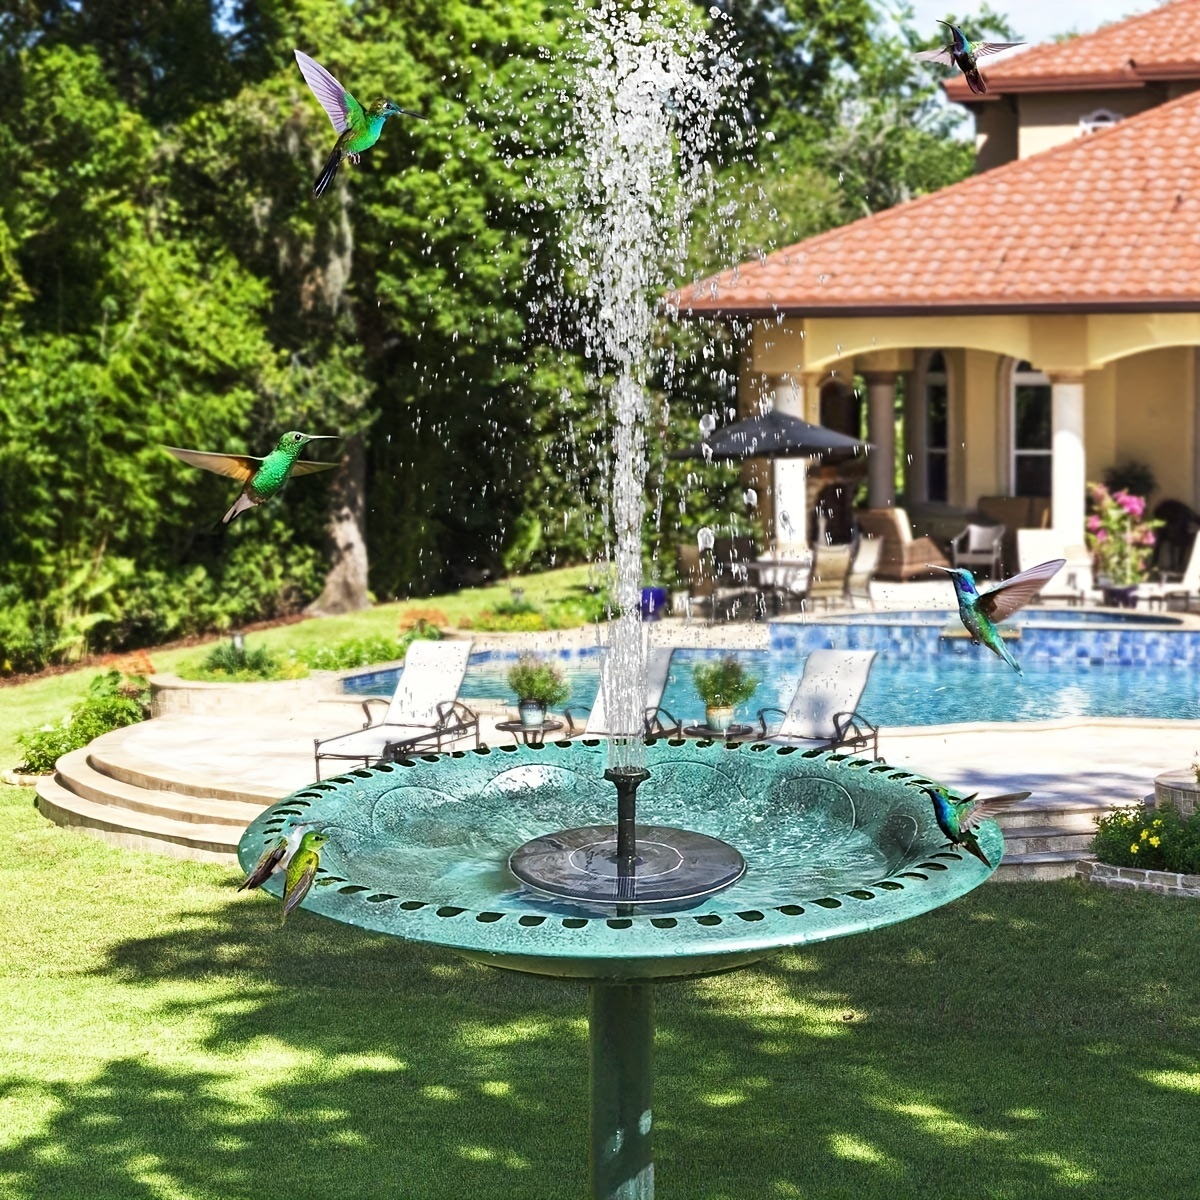 Fontaine solaire à ventouses pour la maison, le jardin, la piscine